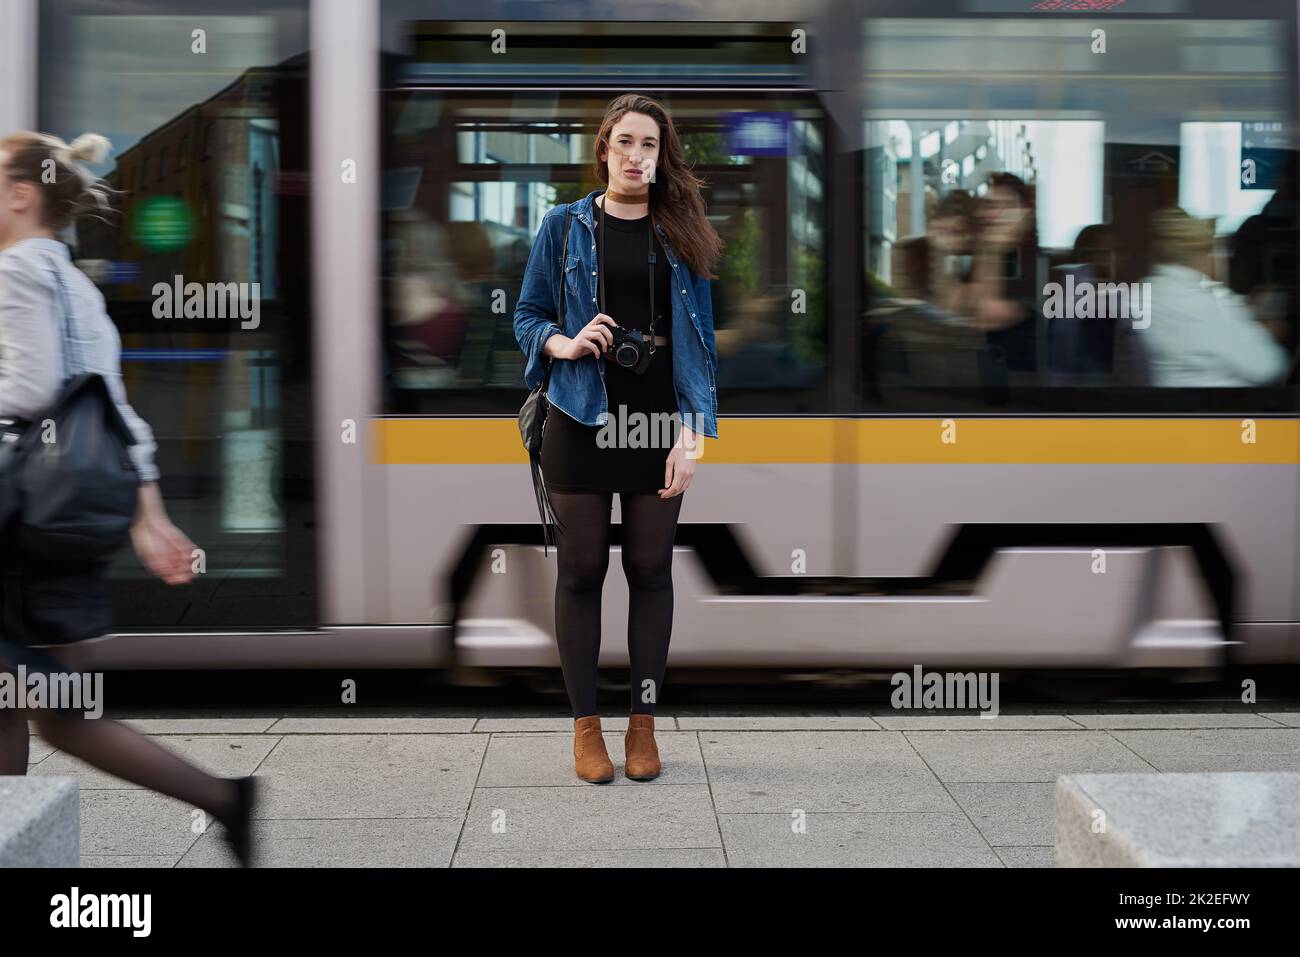 Je suis arrivé. Portrait d'une jeune photographe féminine attirante debout dans le métro avec un train traversant en arrière-plan. Banque D'Images